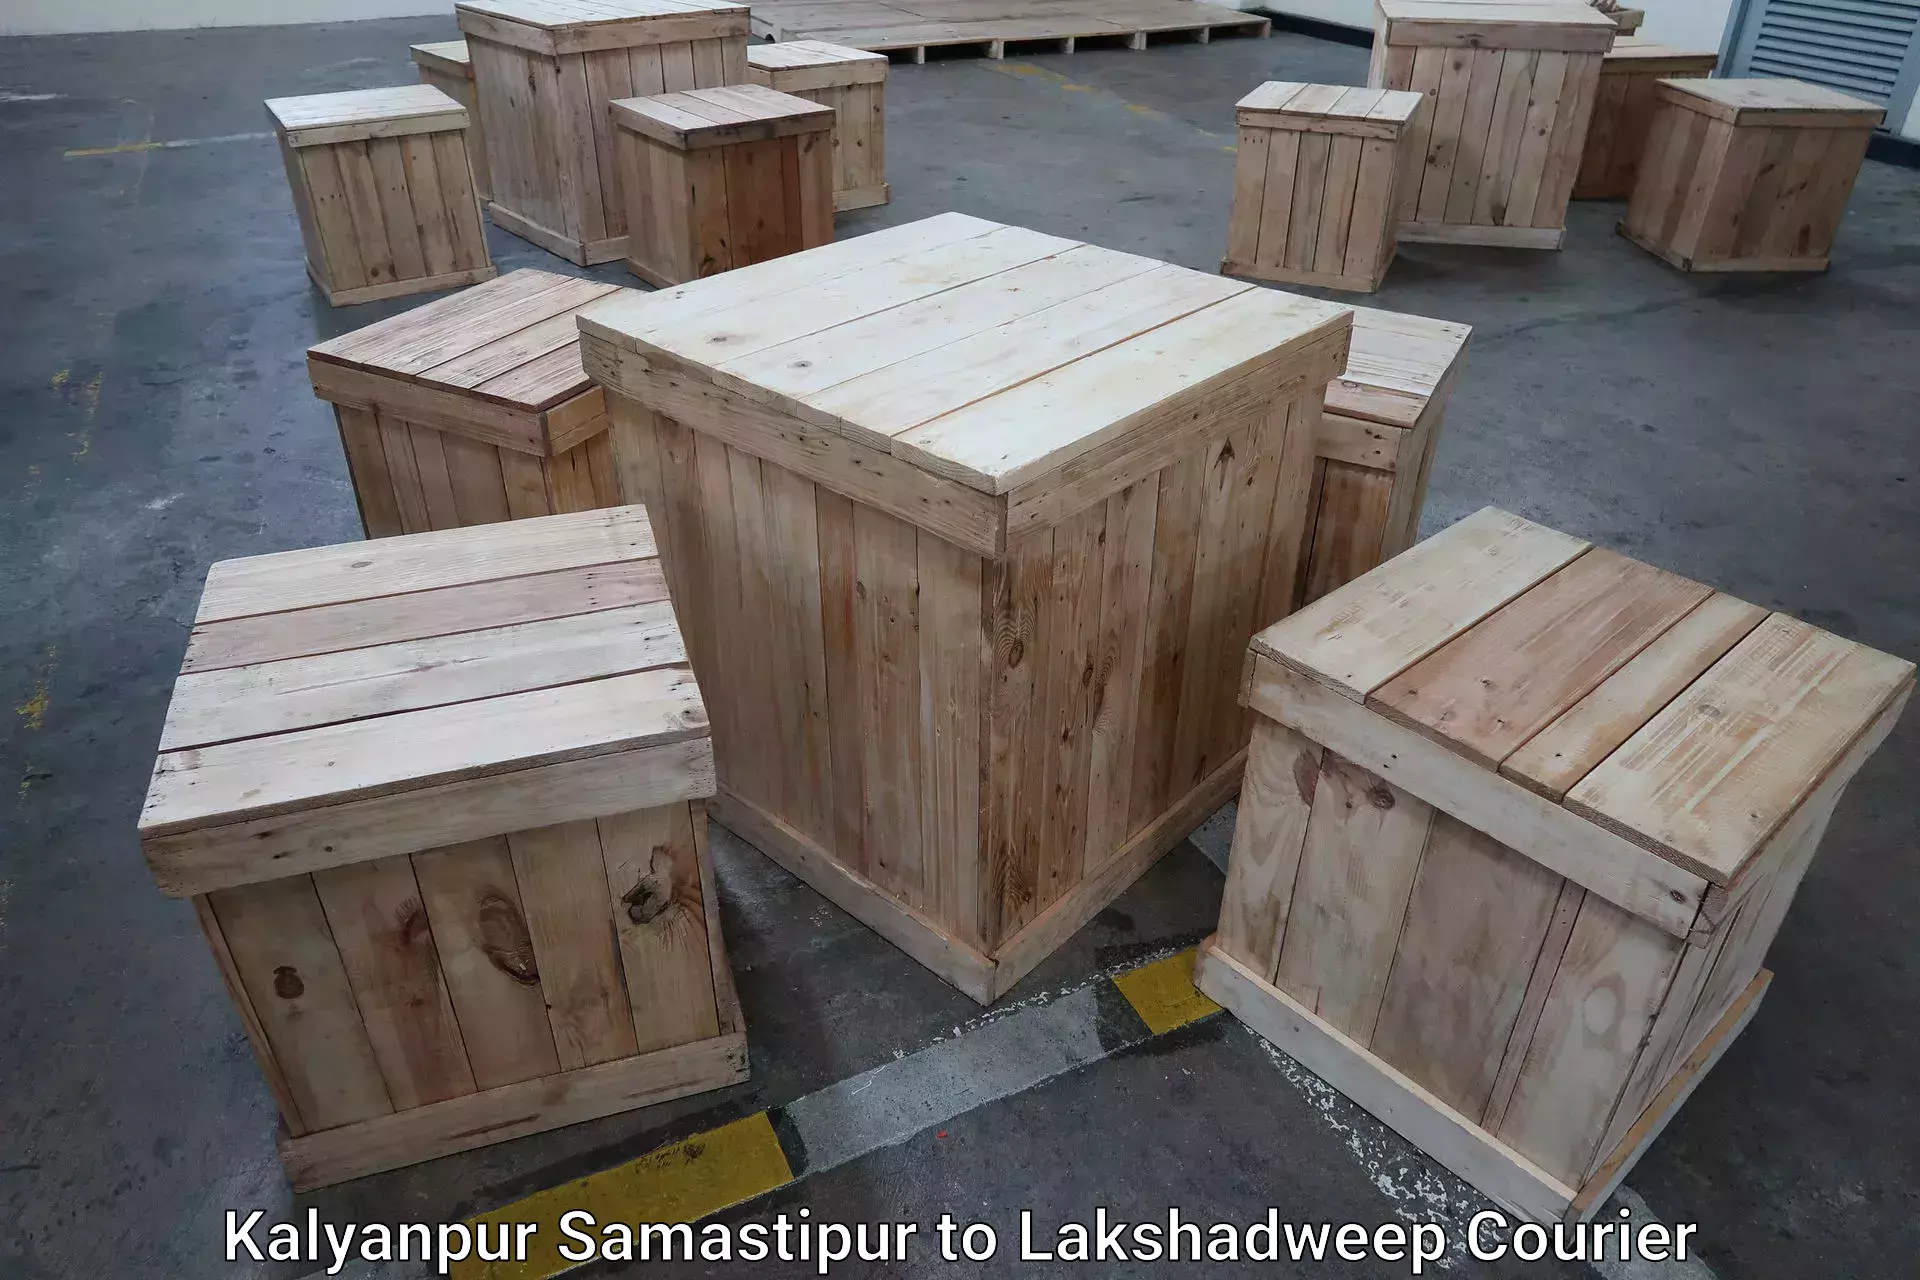 Luggage shipping planner Kalyanpur Samastipur to Lakshadweep